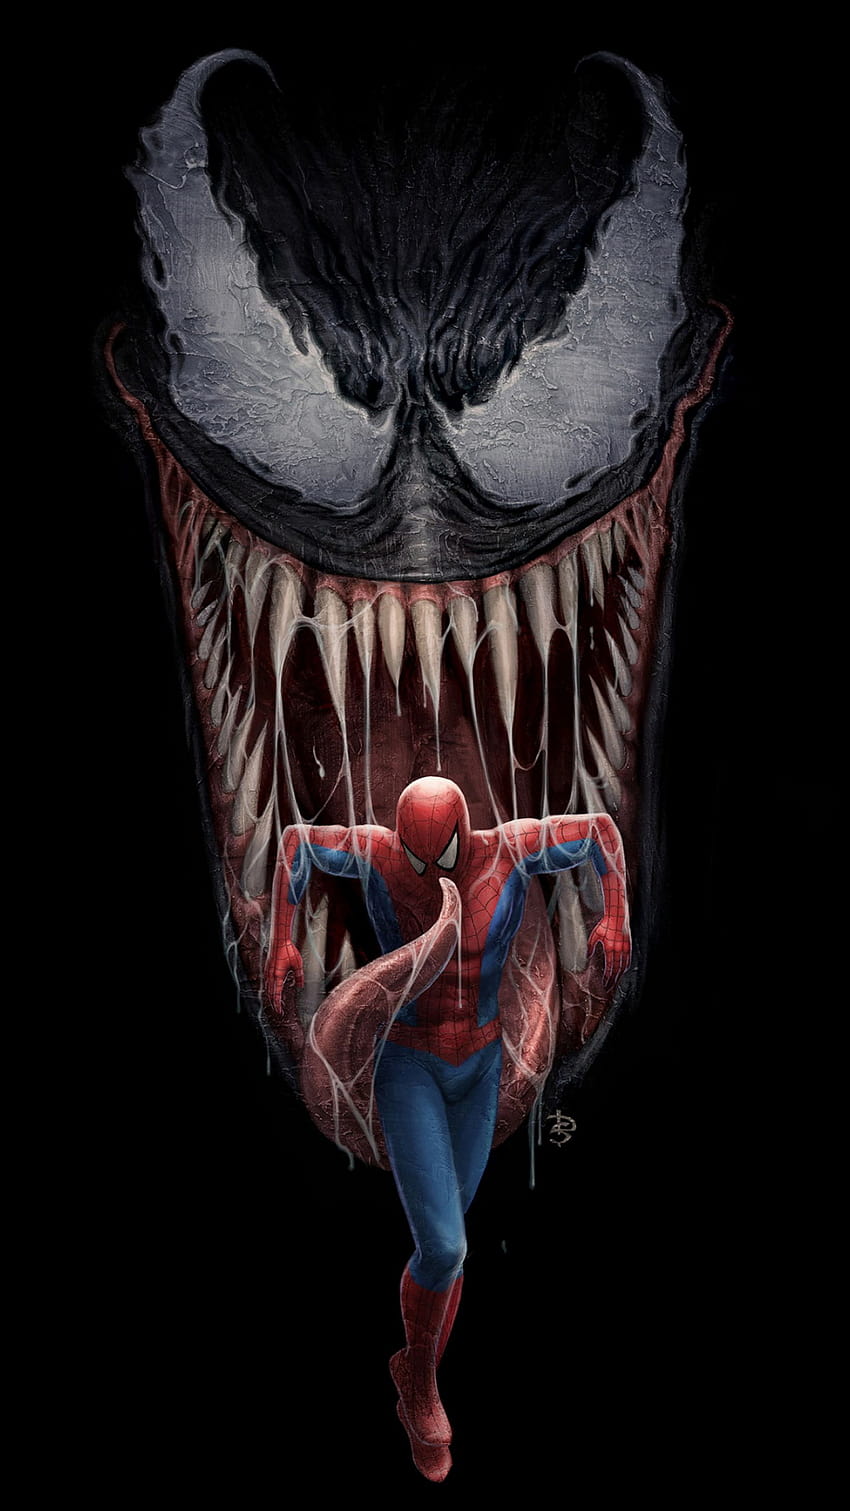 Spiderman Venom là một trong những kẻ thù nổi tiếng nhất của Siêu Nhân Người Nhện. Bạn có thể mang tác phẩm nghệ thuật này lên màn hình điện thoại của mình để truyền tải sức mạnh và liên kết sâu sắc giữa những nhân vật này. (Spiderman Venom is one of the most famous enemies of Spiderman. You can bring this artwork to your phone screen to convey the strength and deep connection between these characters.)